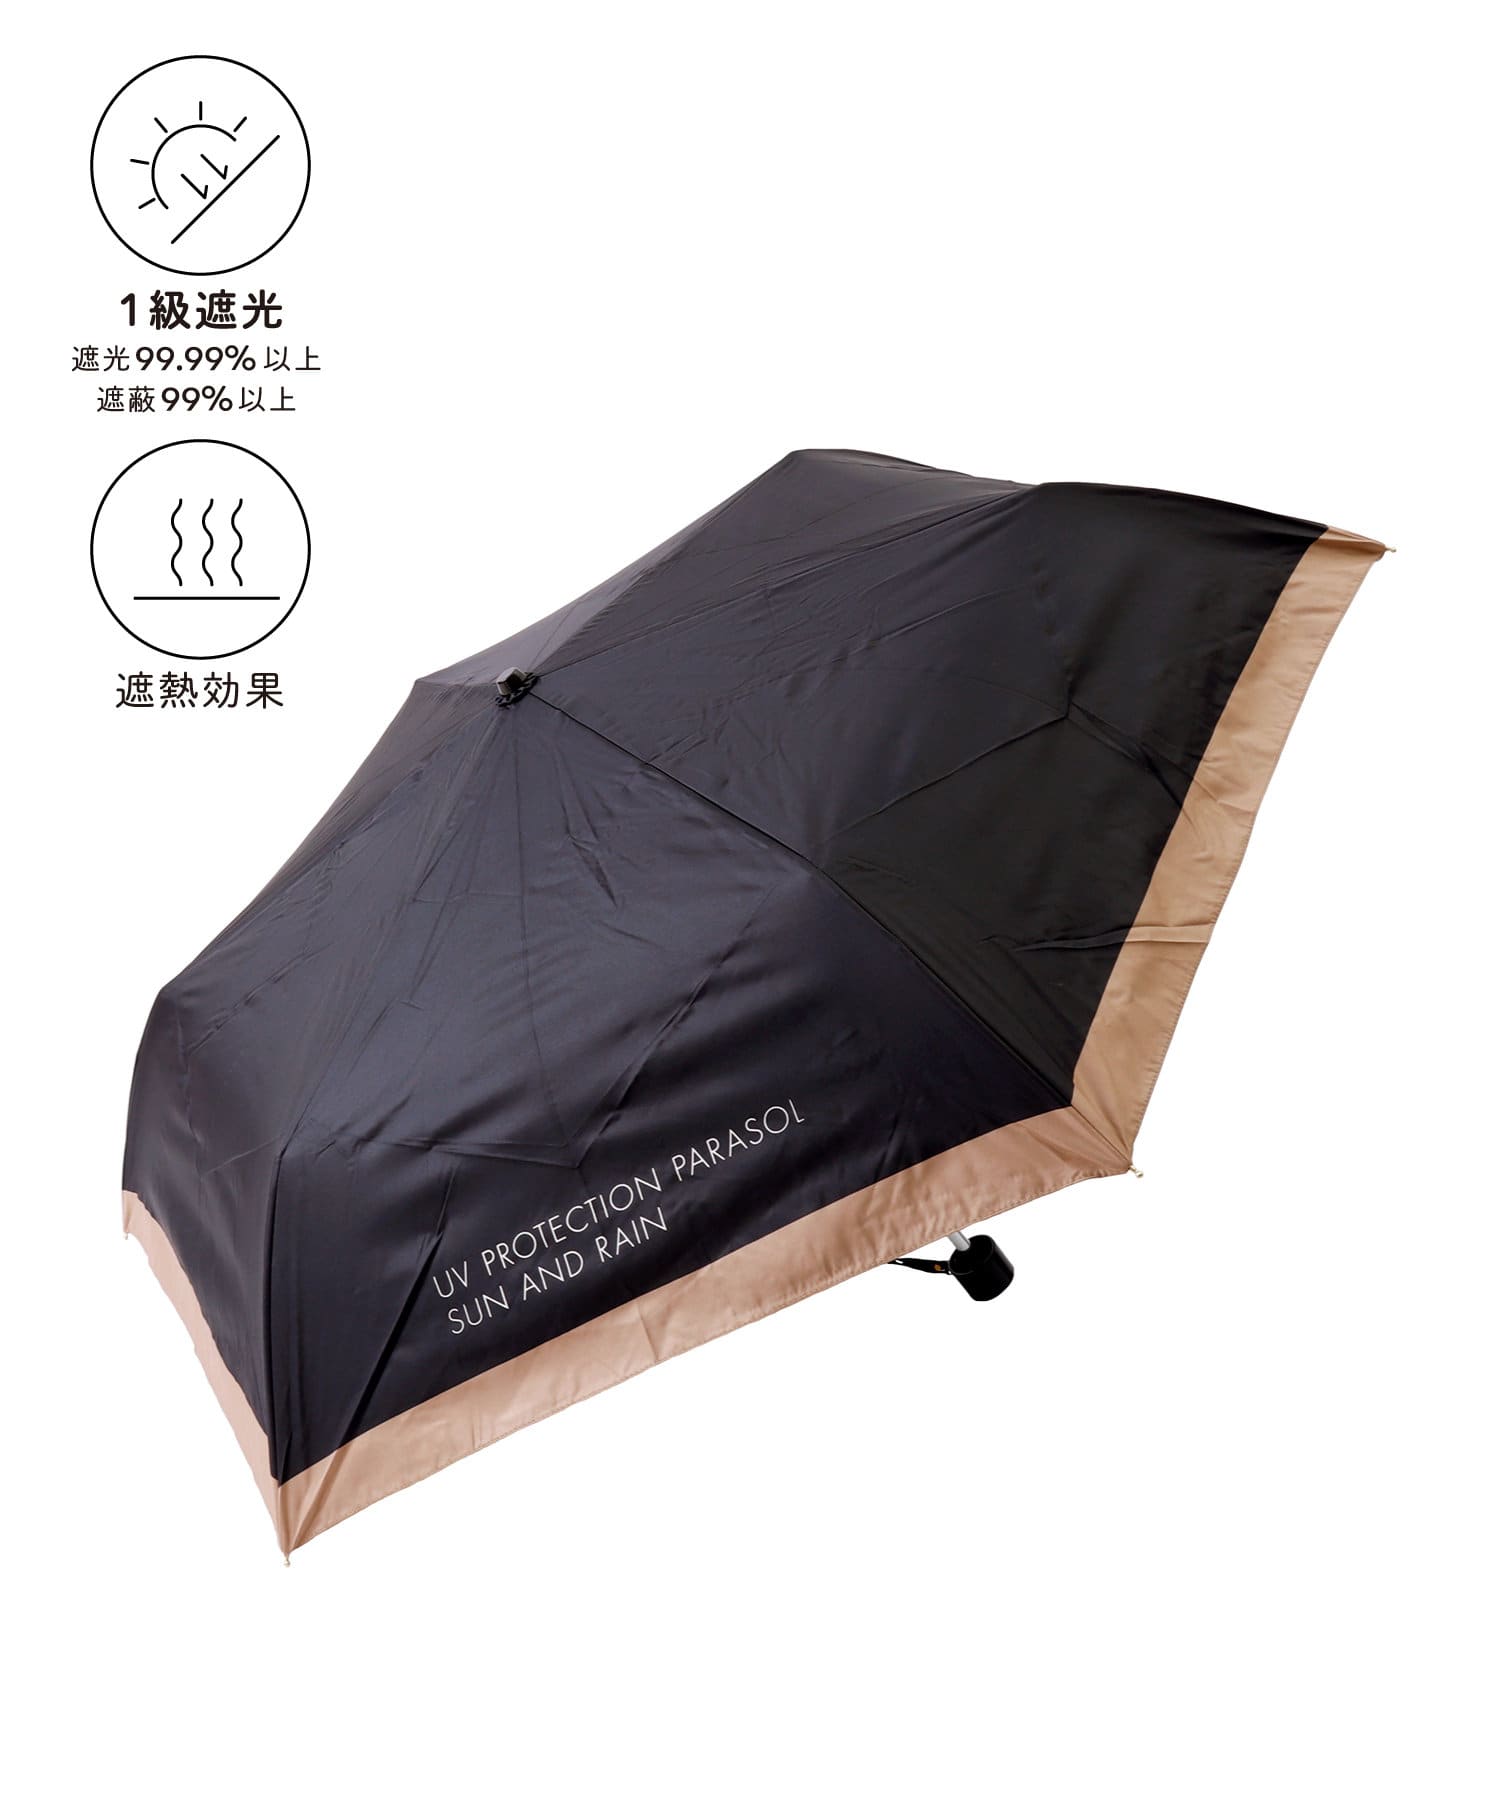 3COINS(スリーコインズ) 晴雨兼用折傘ロゴバイカラー